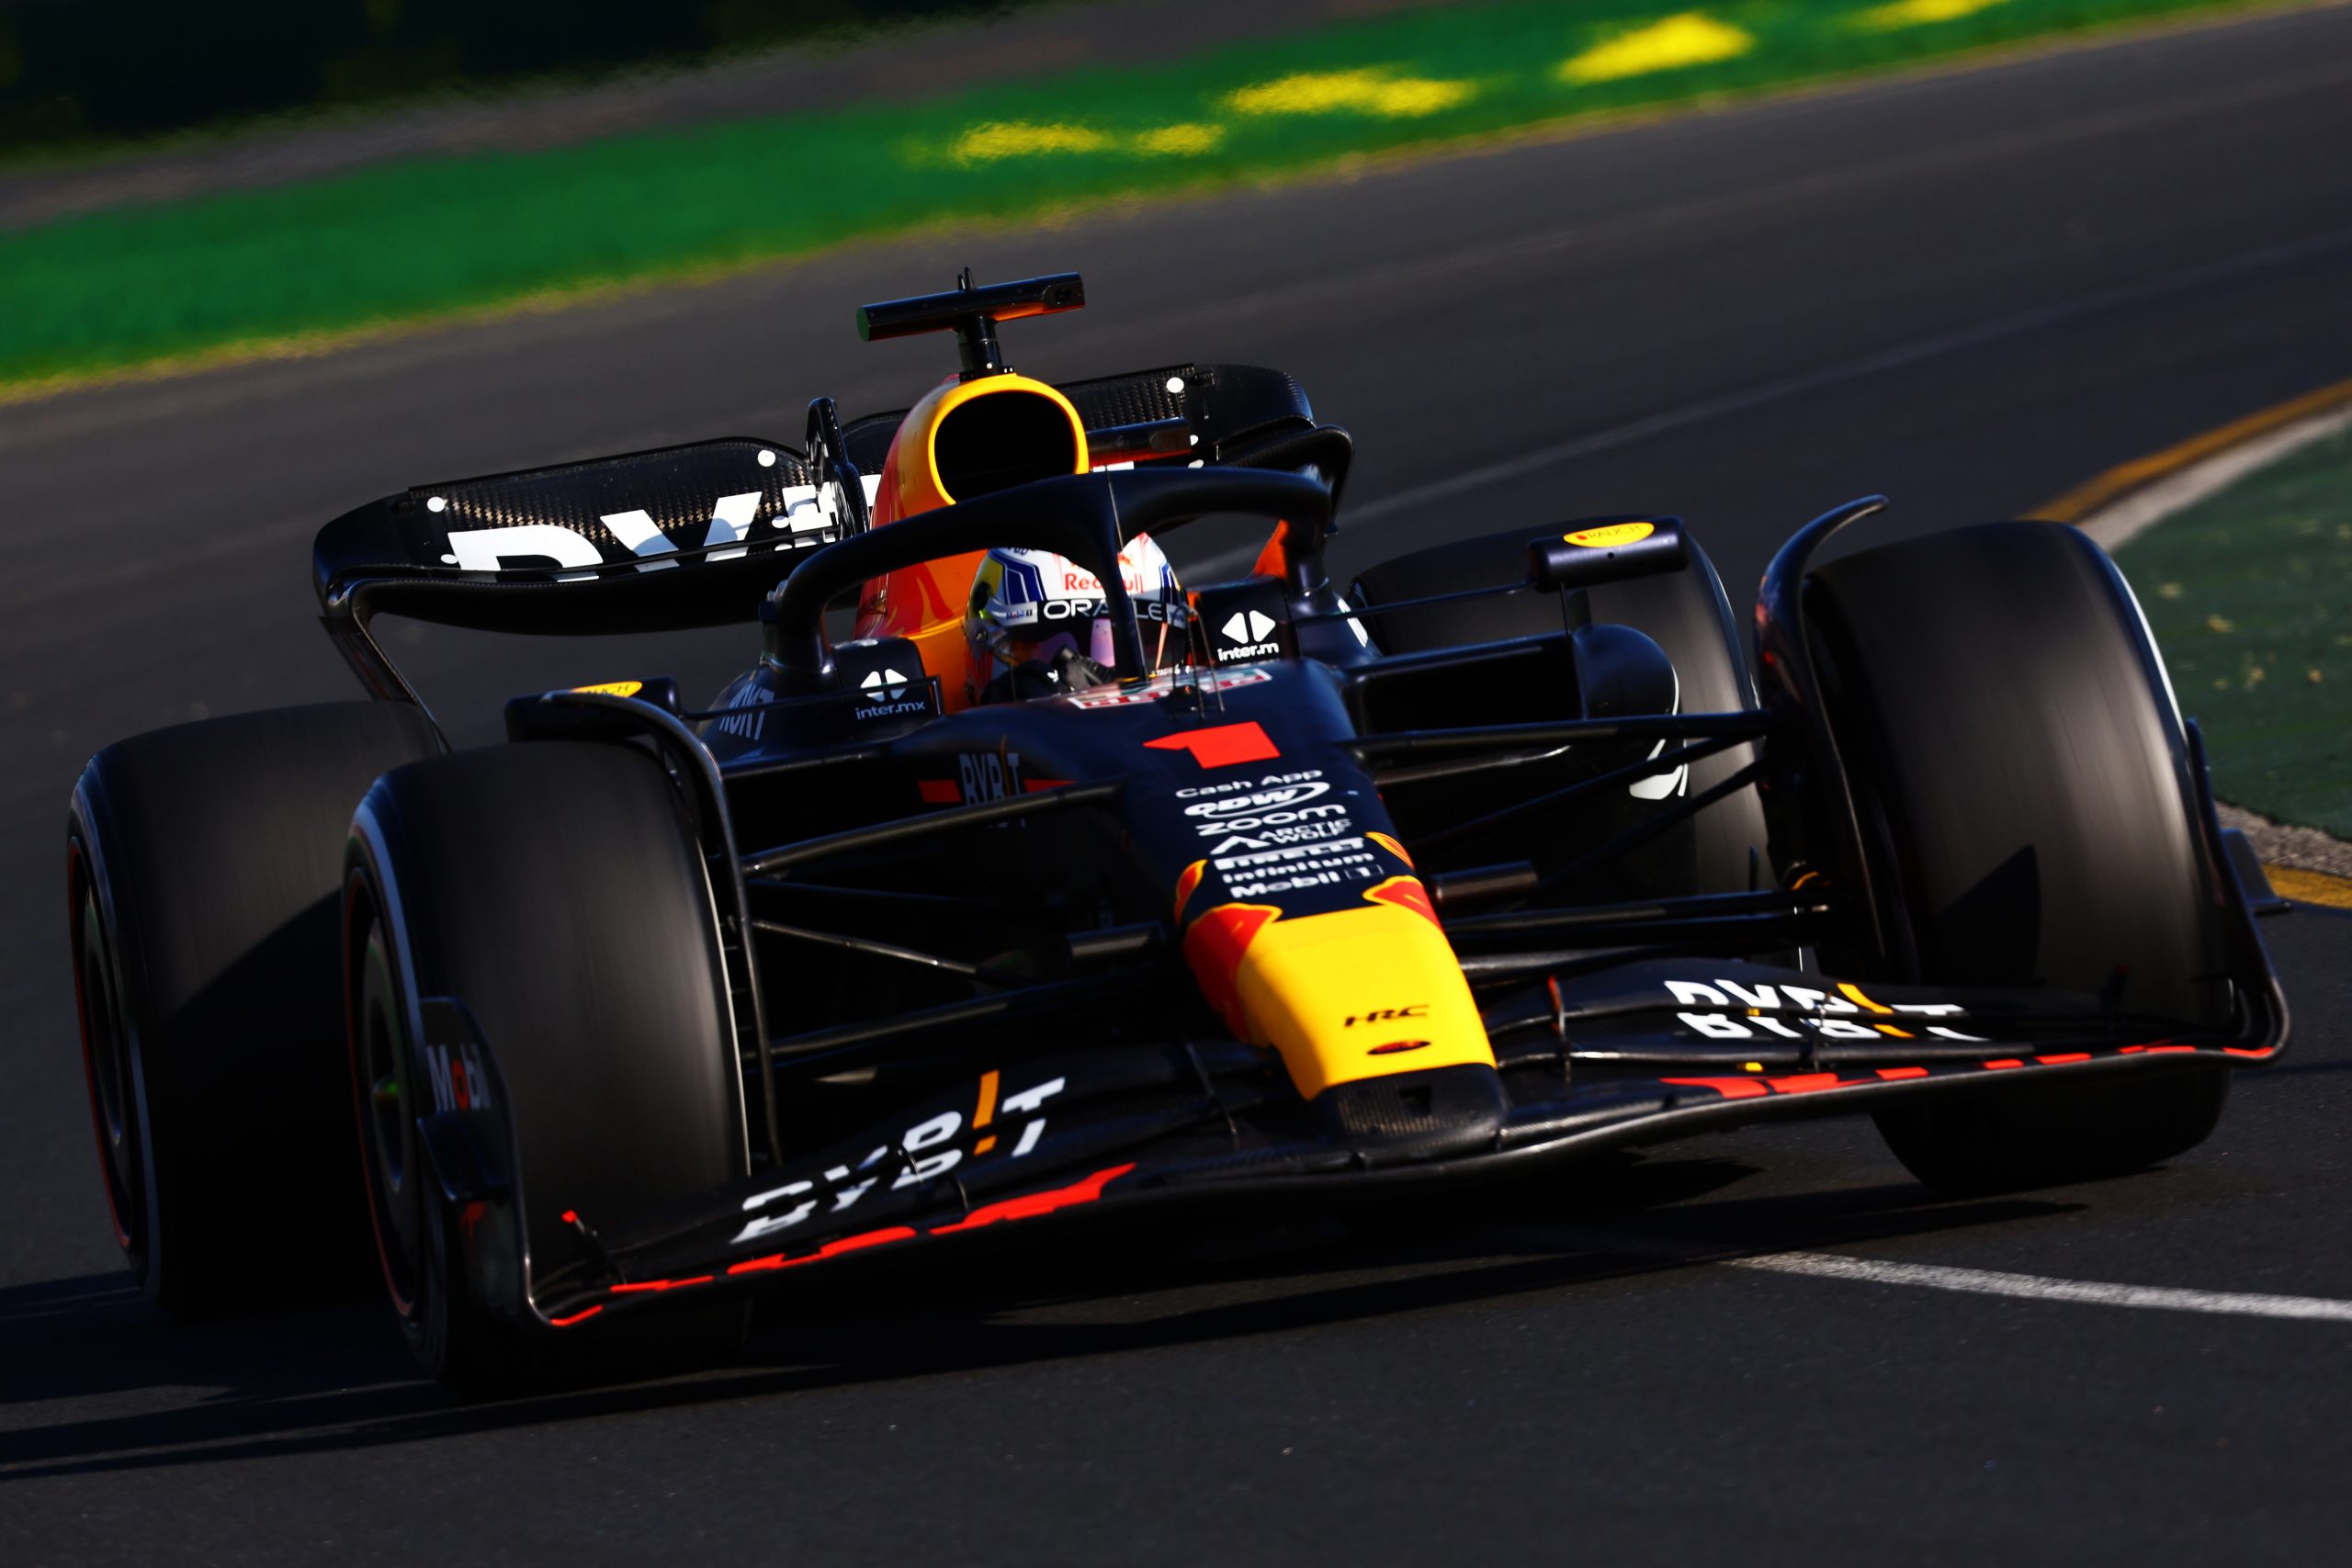 Max Verstappen won the Formula 1 Australian Grand Prix for Red Bull.